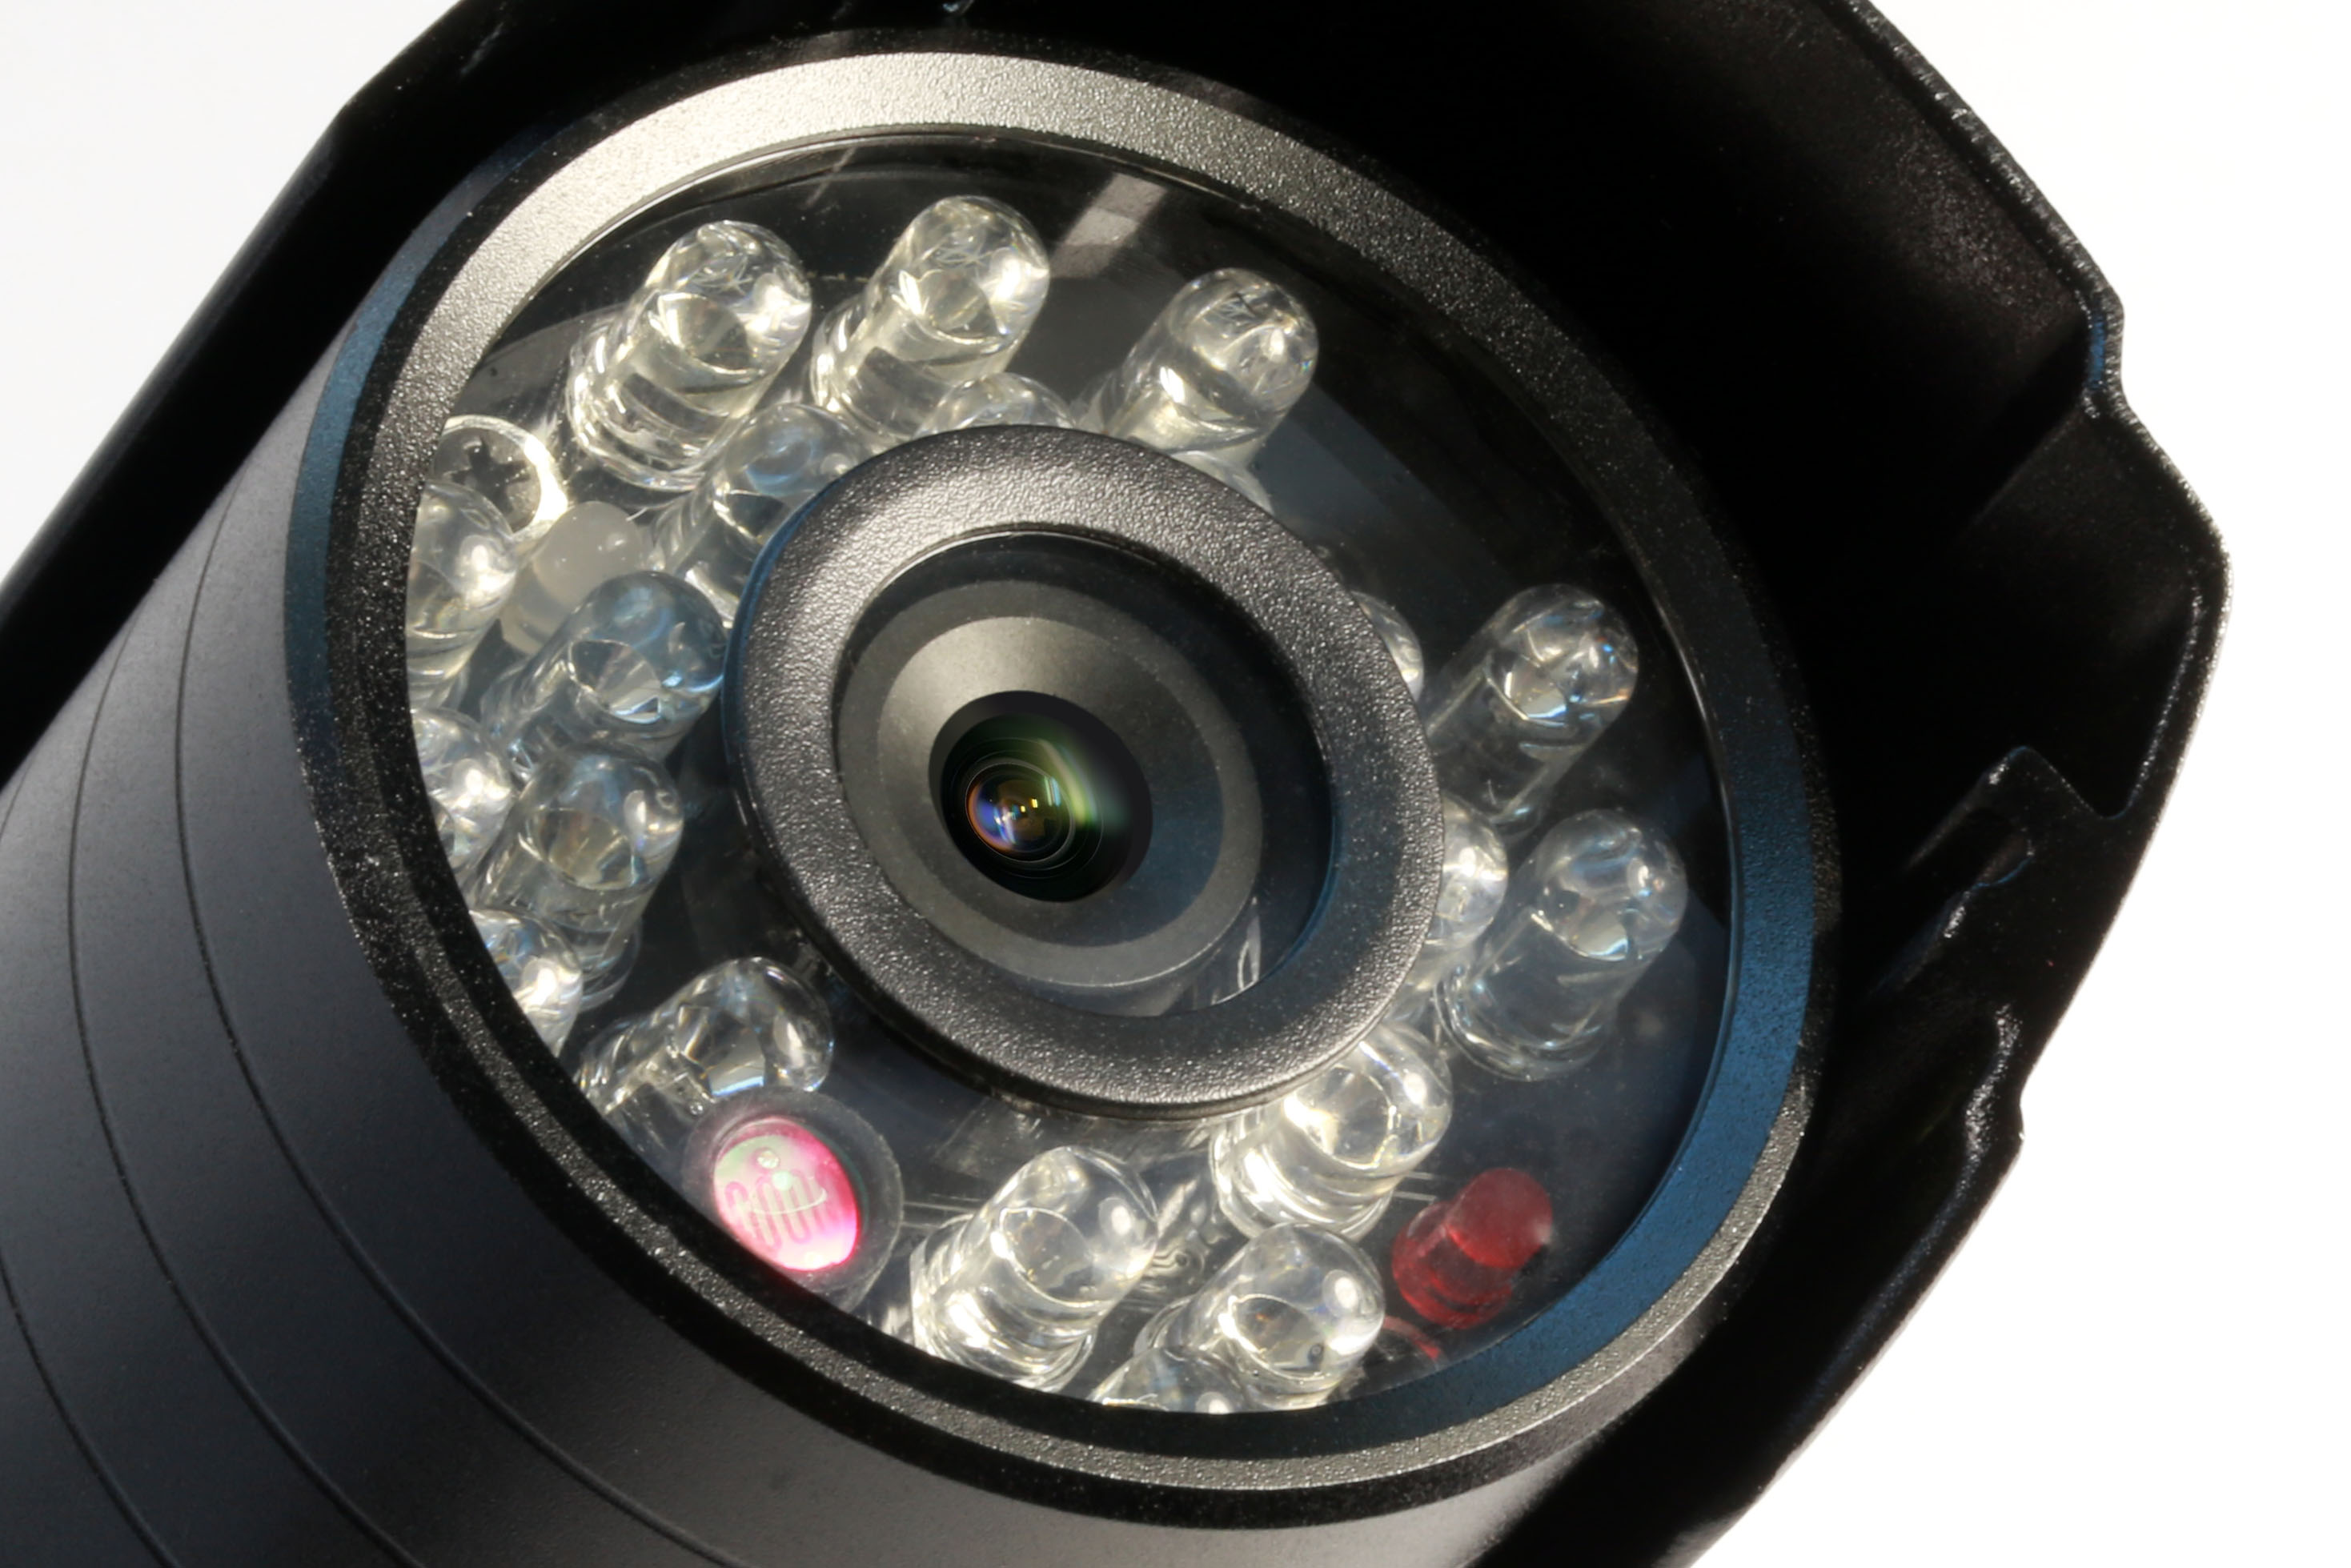 TECHNAXX Zusatzkamera zum Easy Security Überwachungskamera-Set TX-28